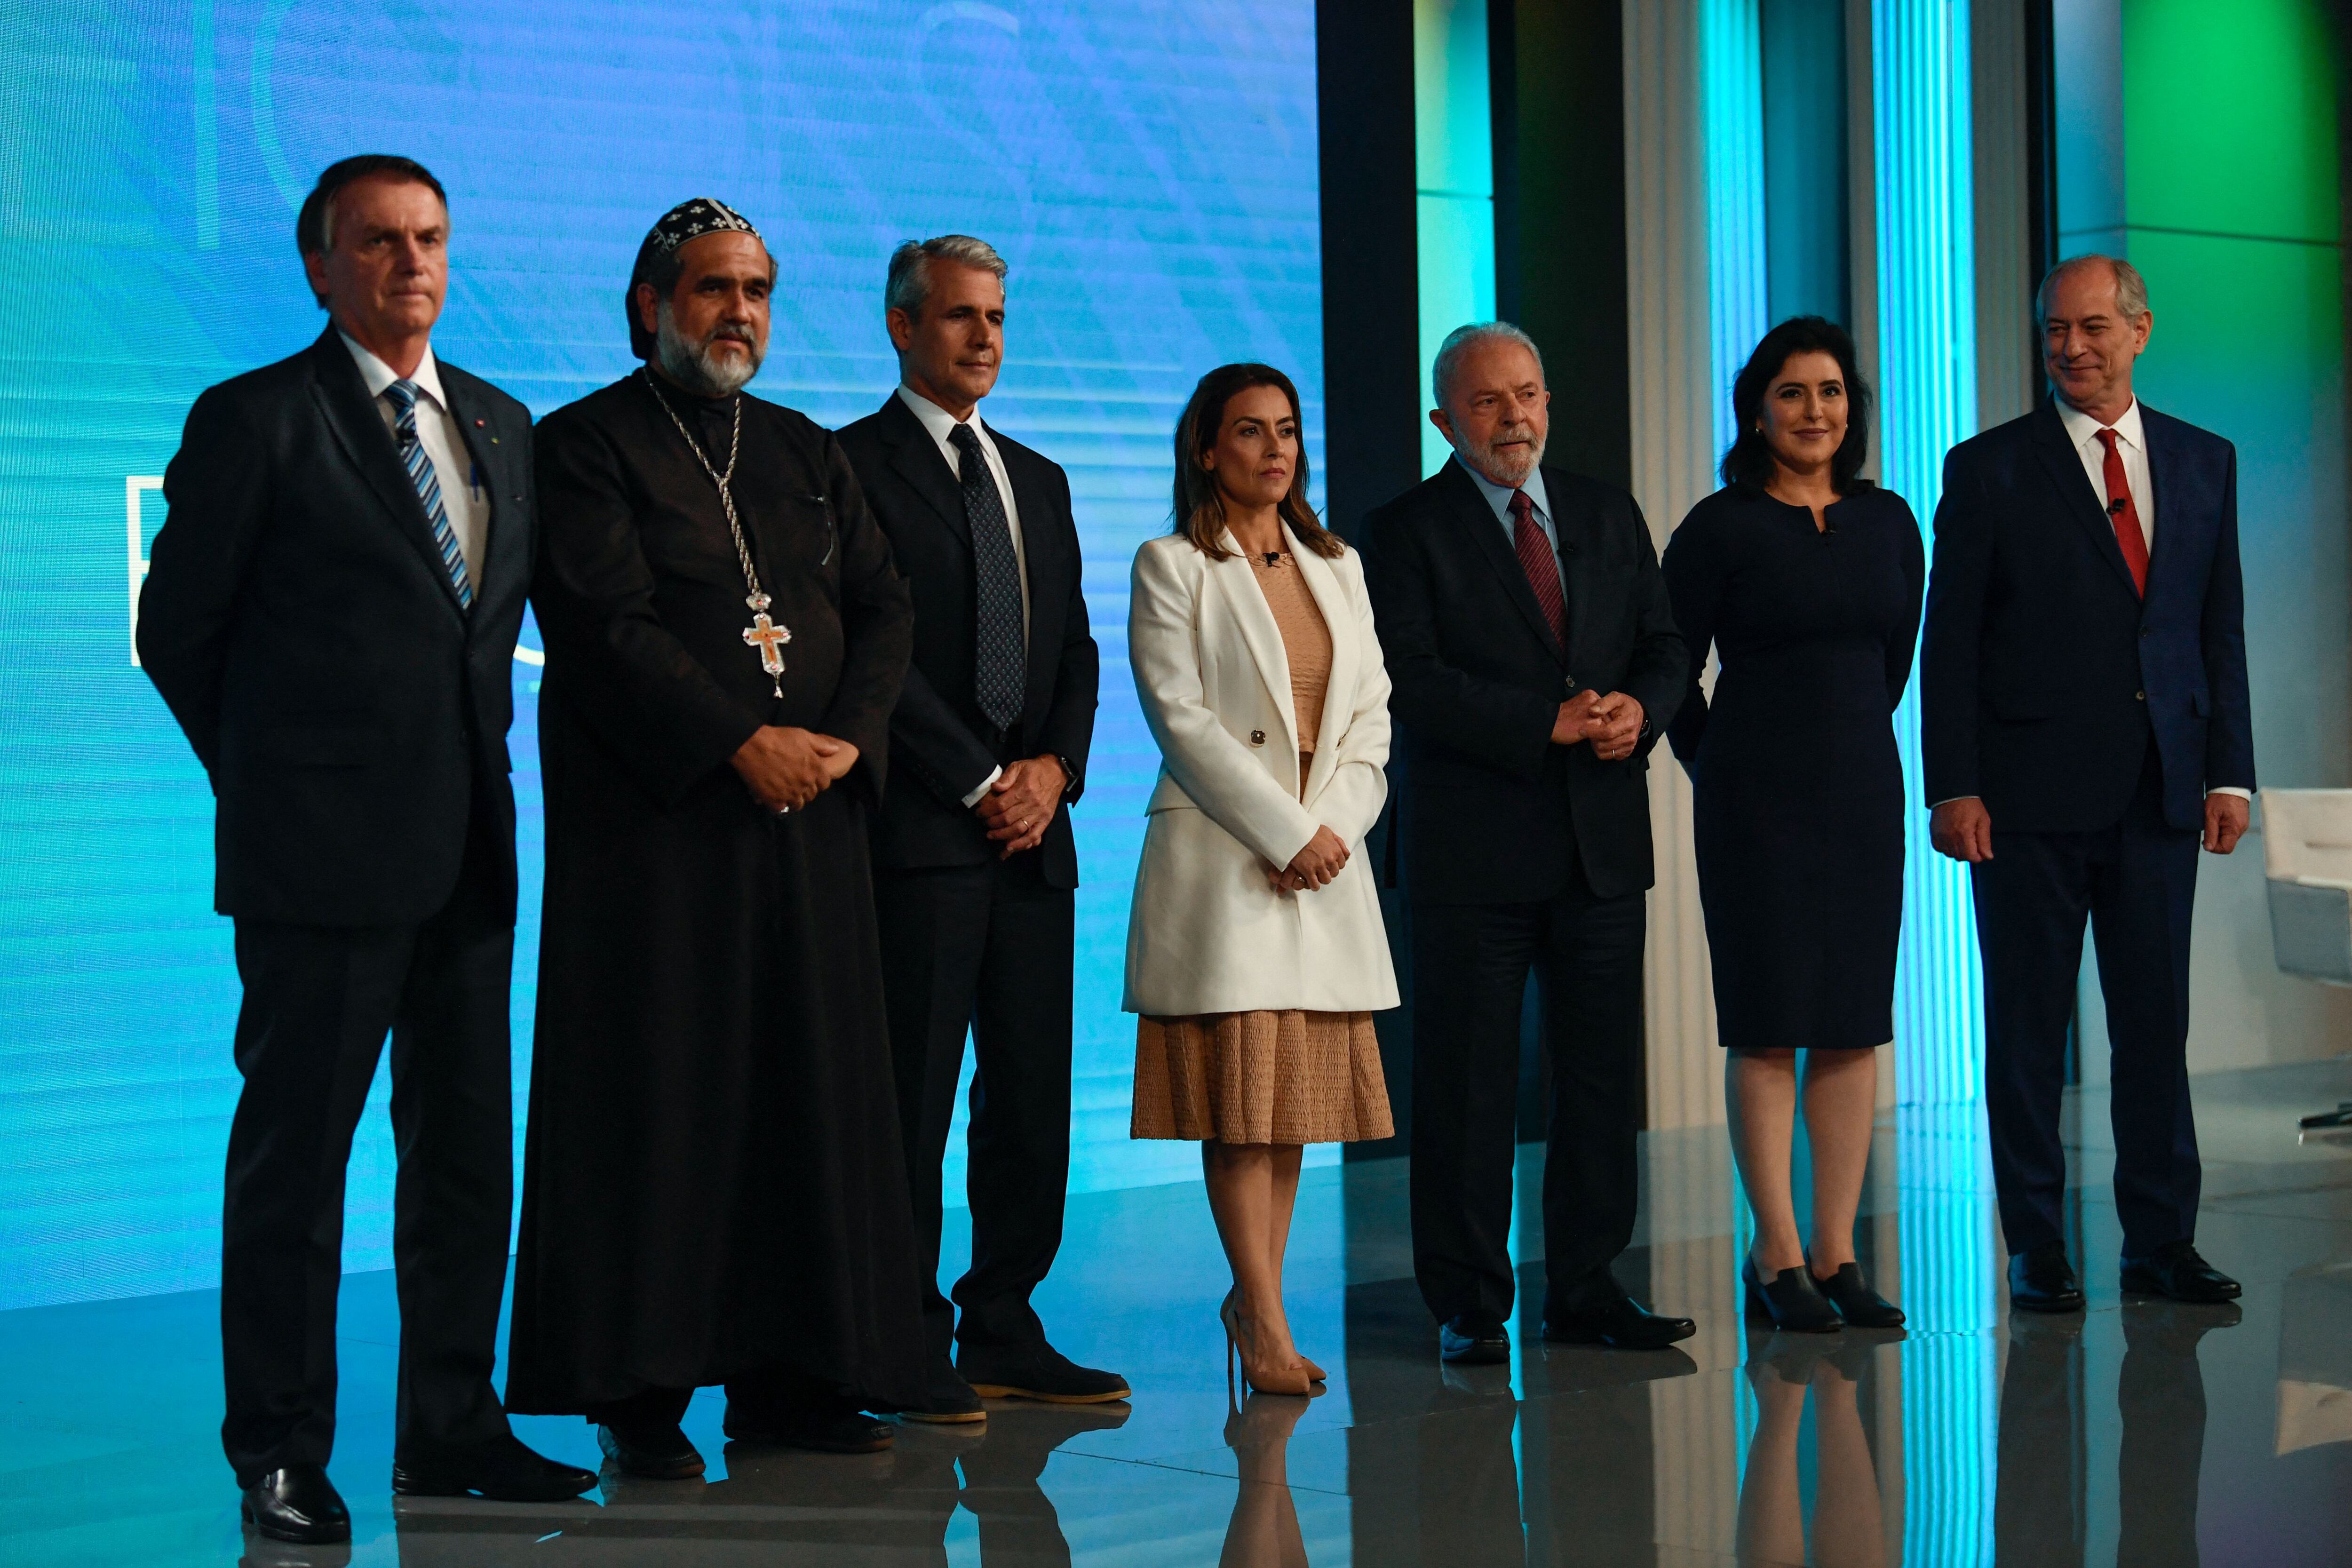 Siete candidatos presidenciales participaron del debate televisivo en Brasil.